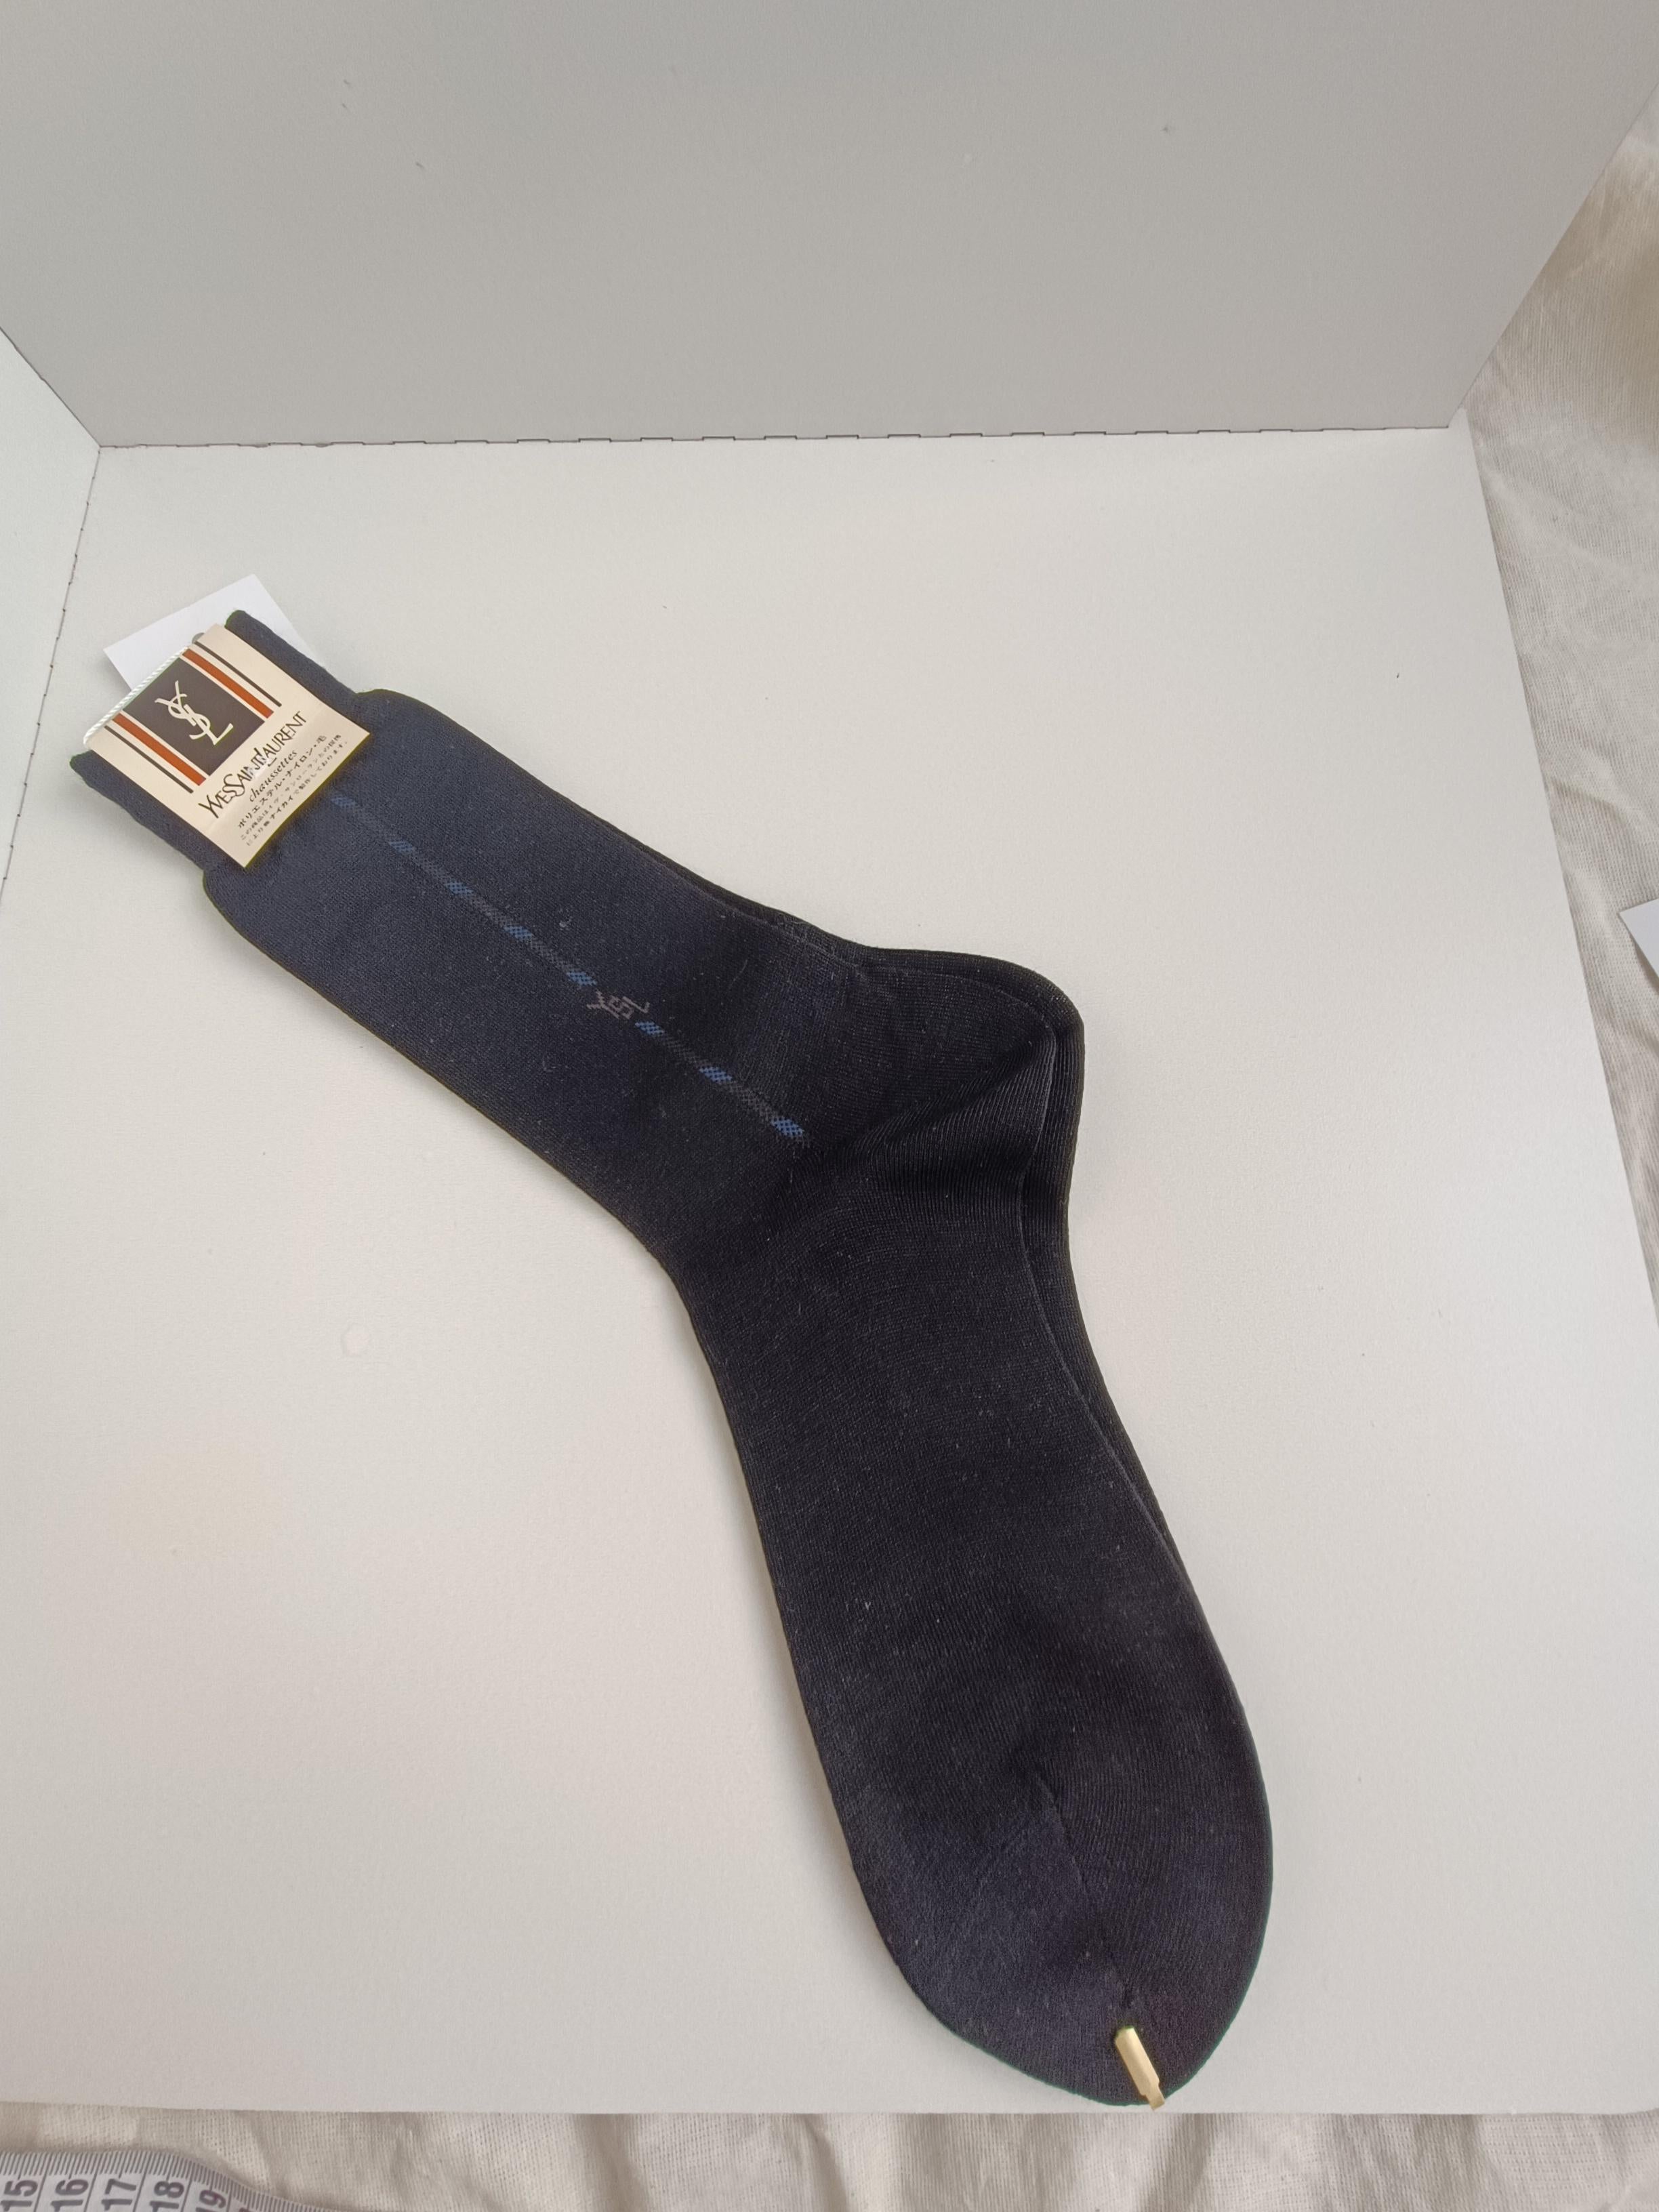 Authentic Yves Saint Laurent Vintage Men’s Socks For Sale 7